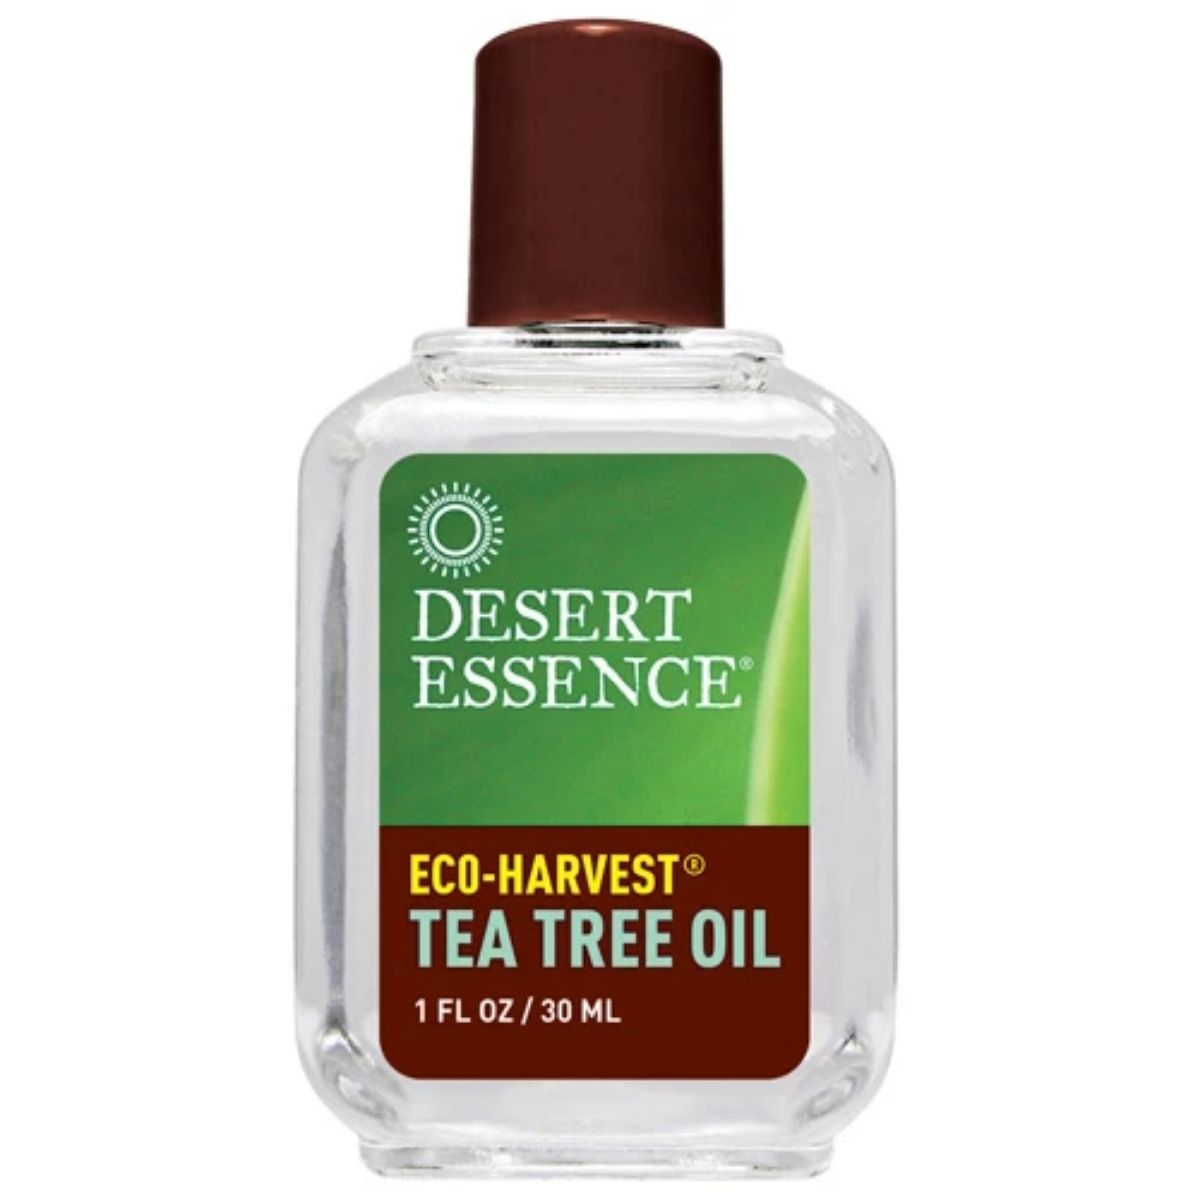 Tea Tree Oil, Eco- Harvest 1oz